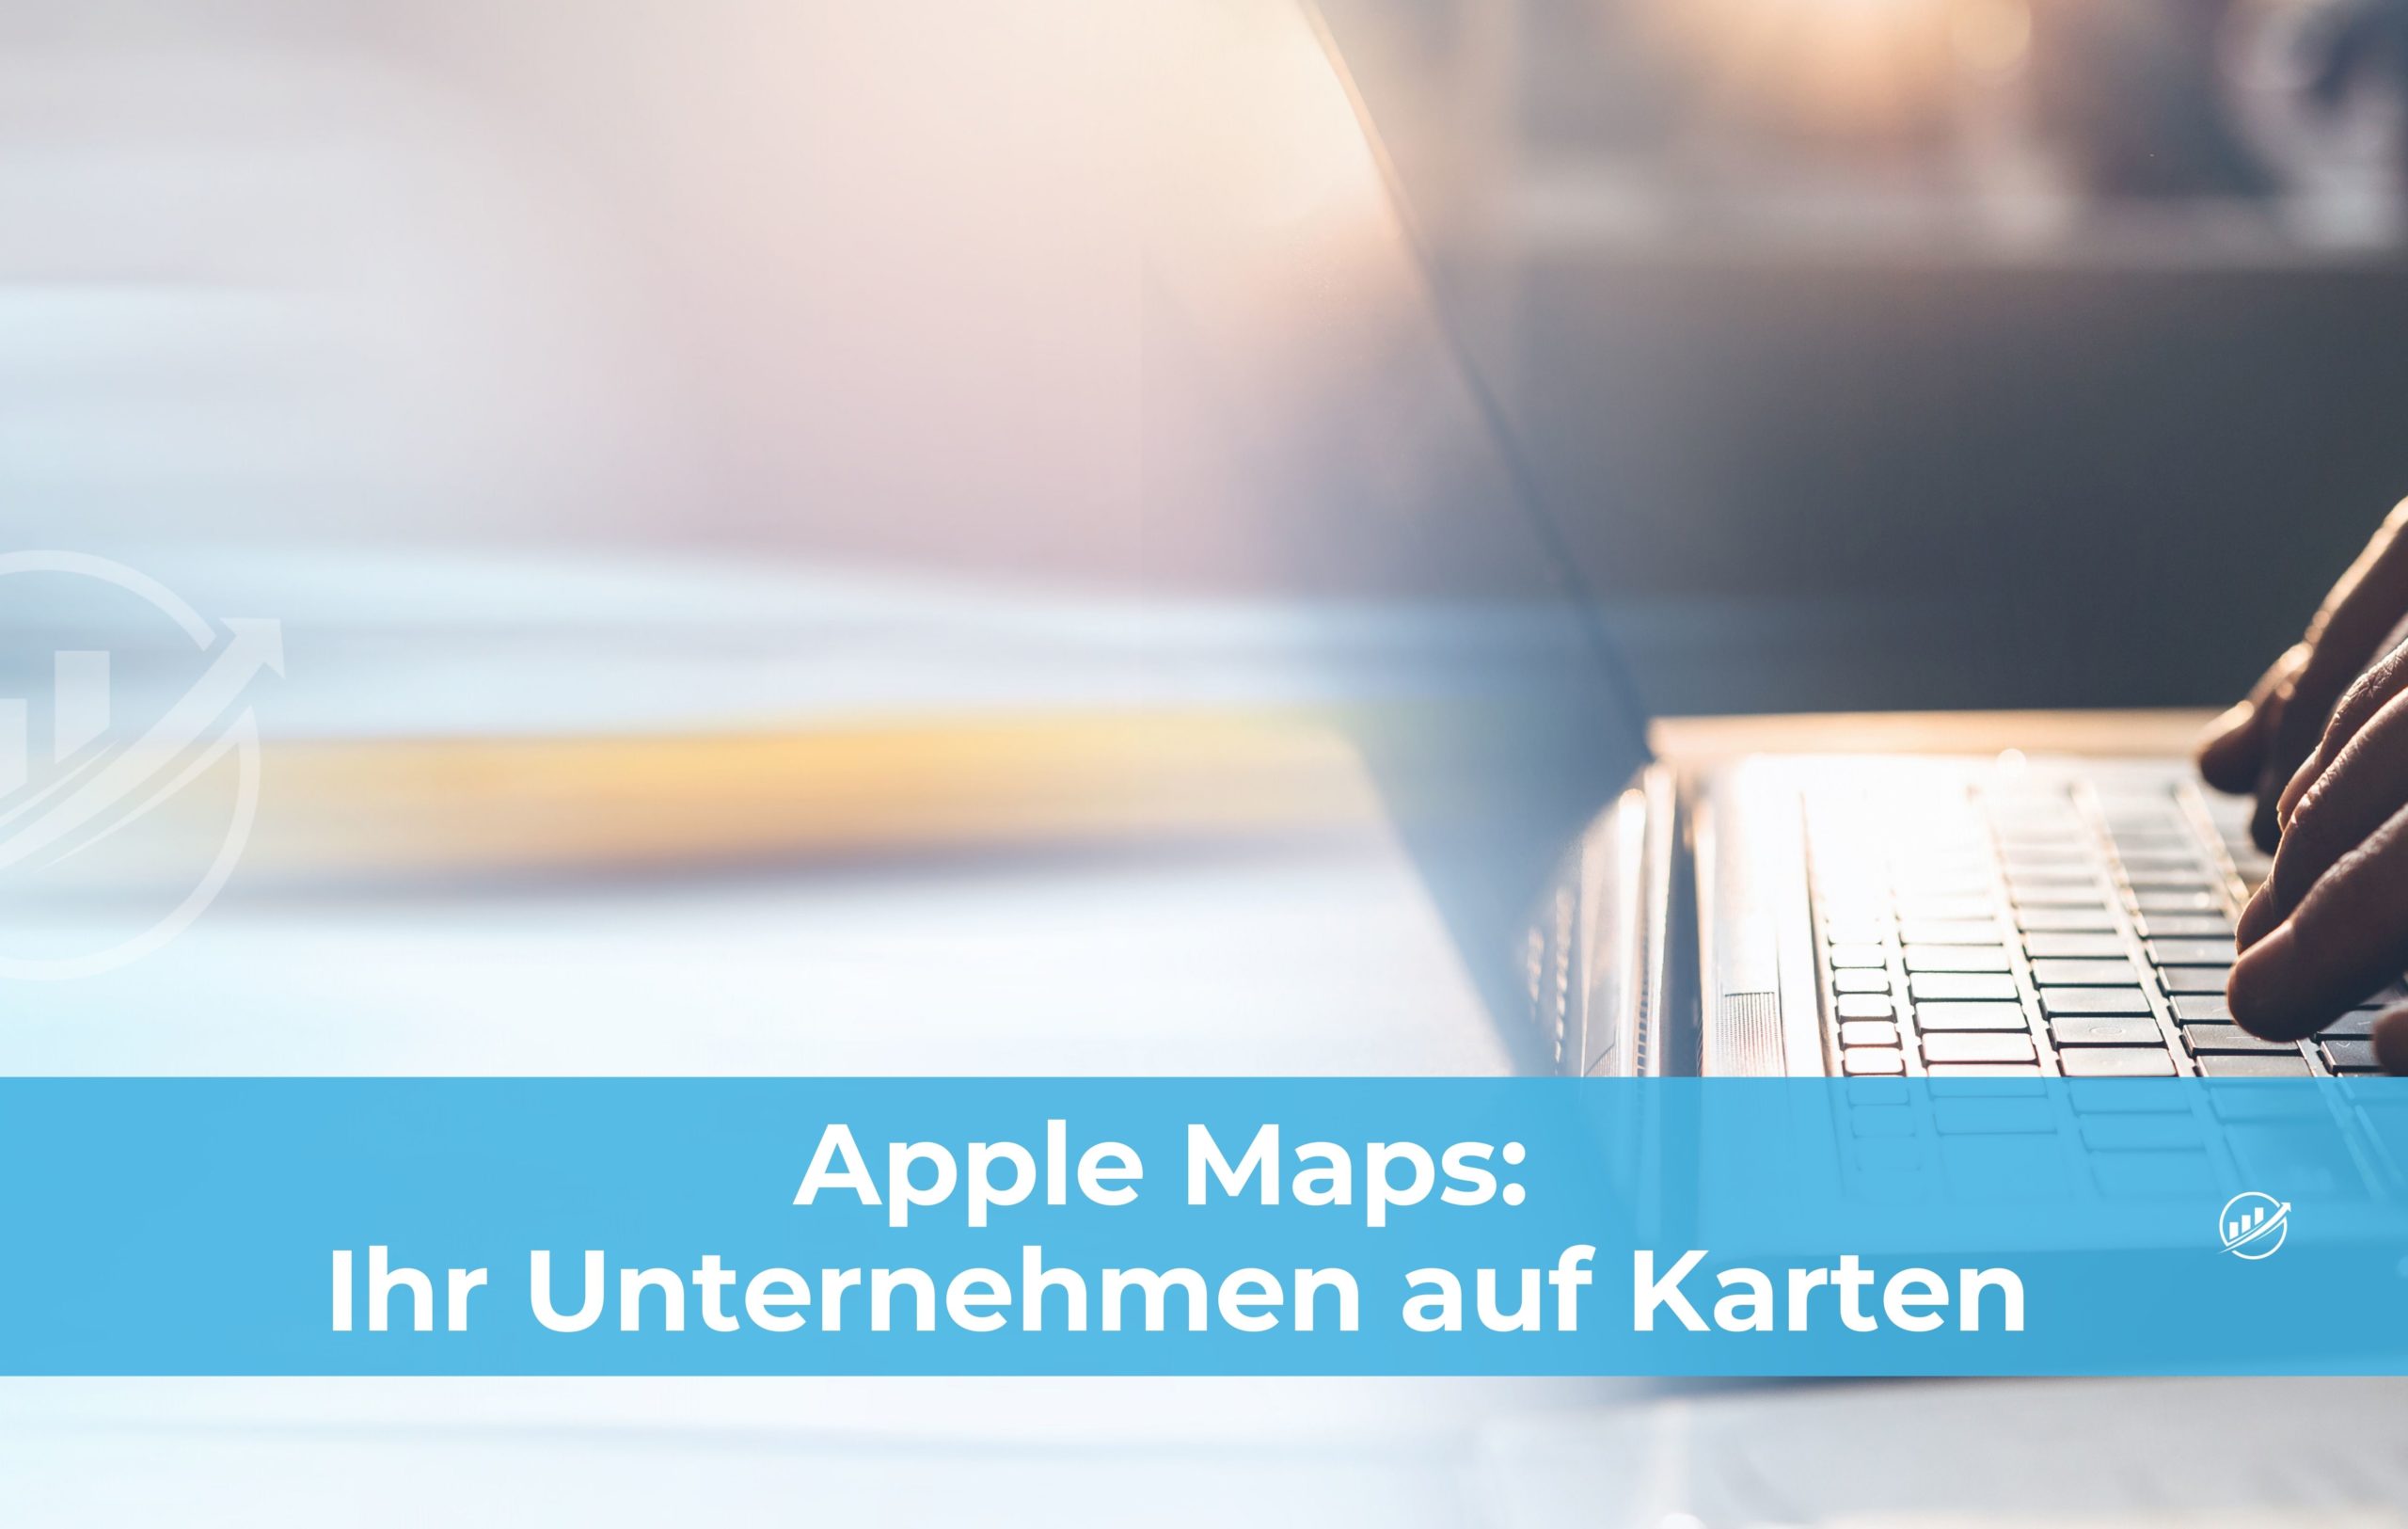 Apple Maps: Ihr Unternehmen auf Karten